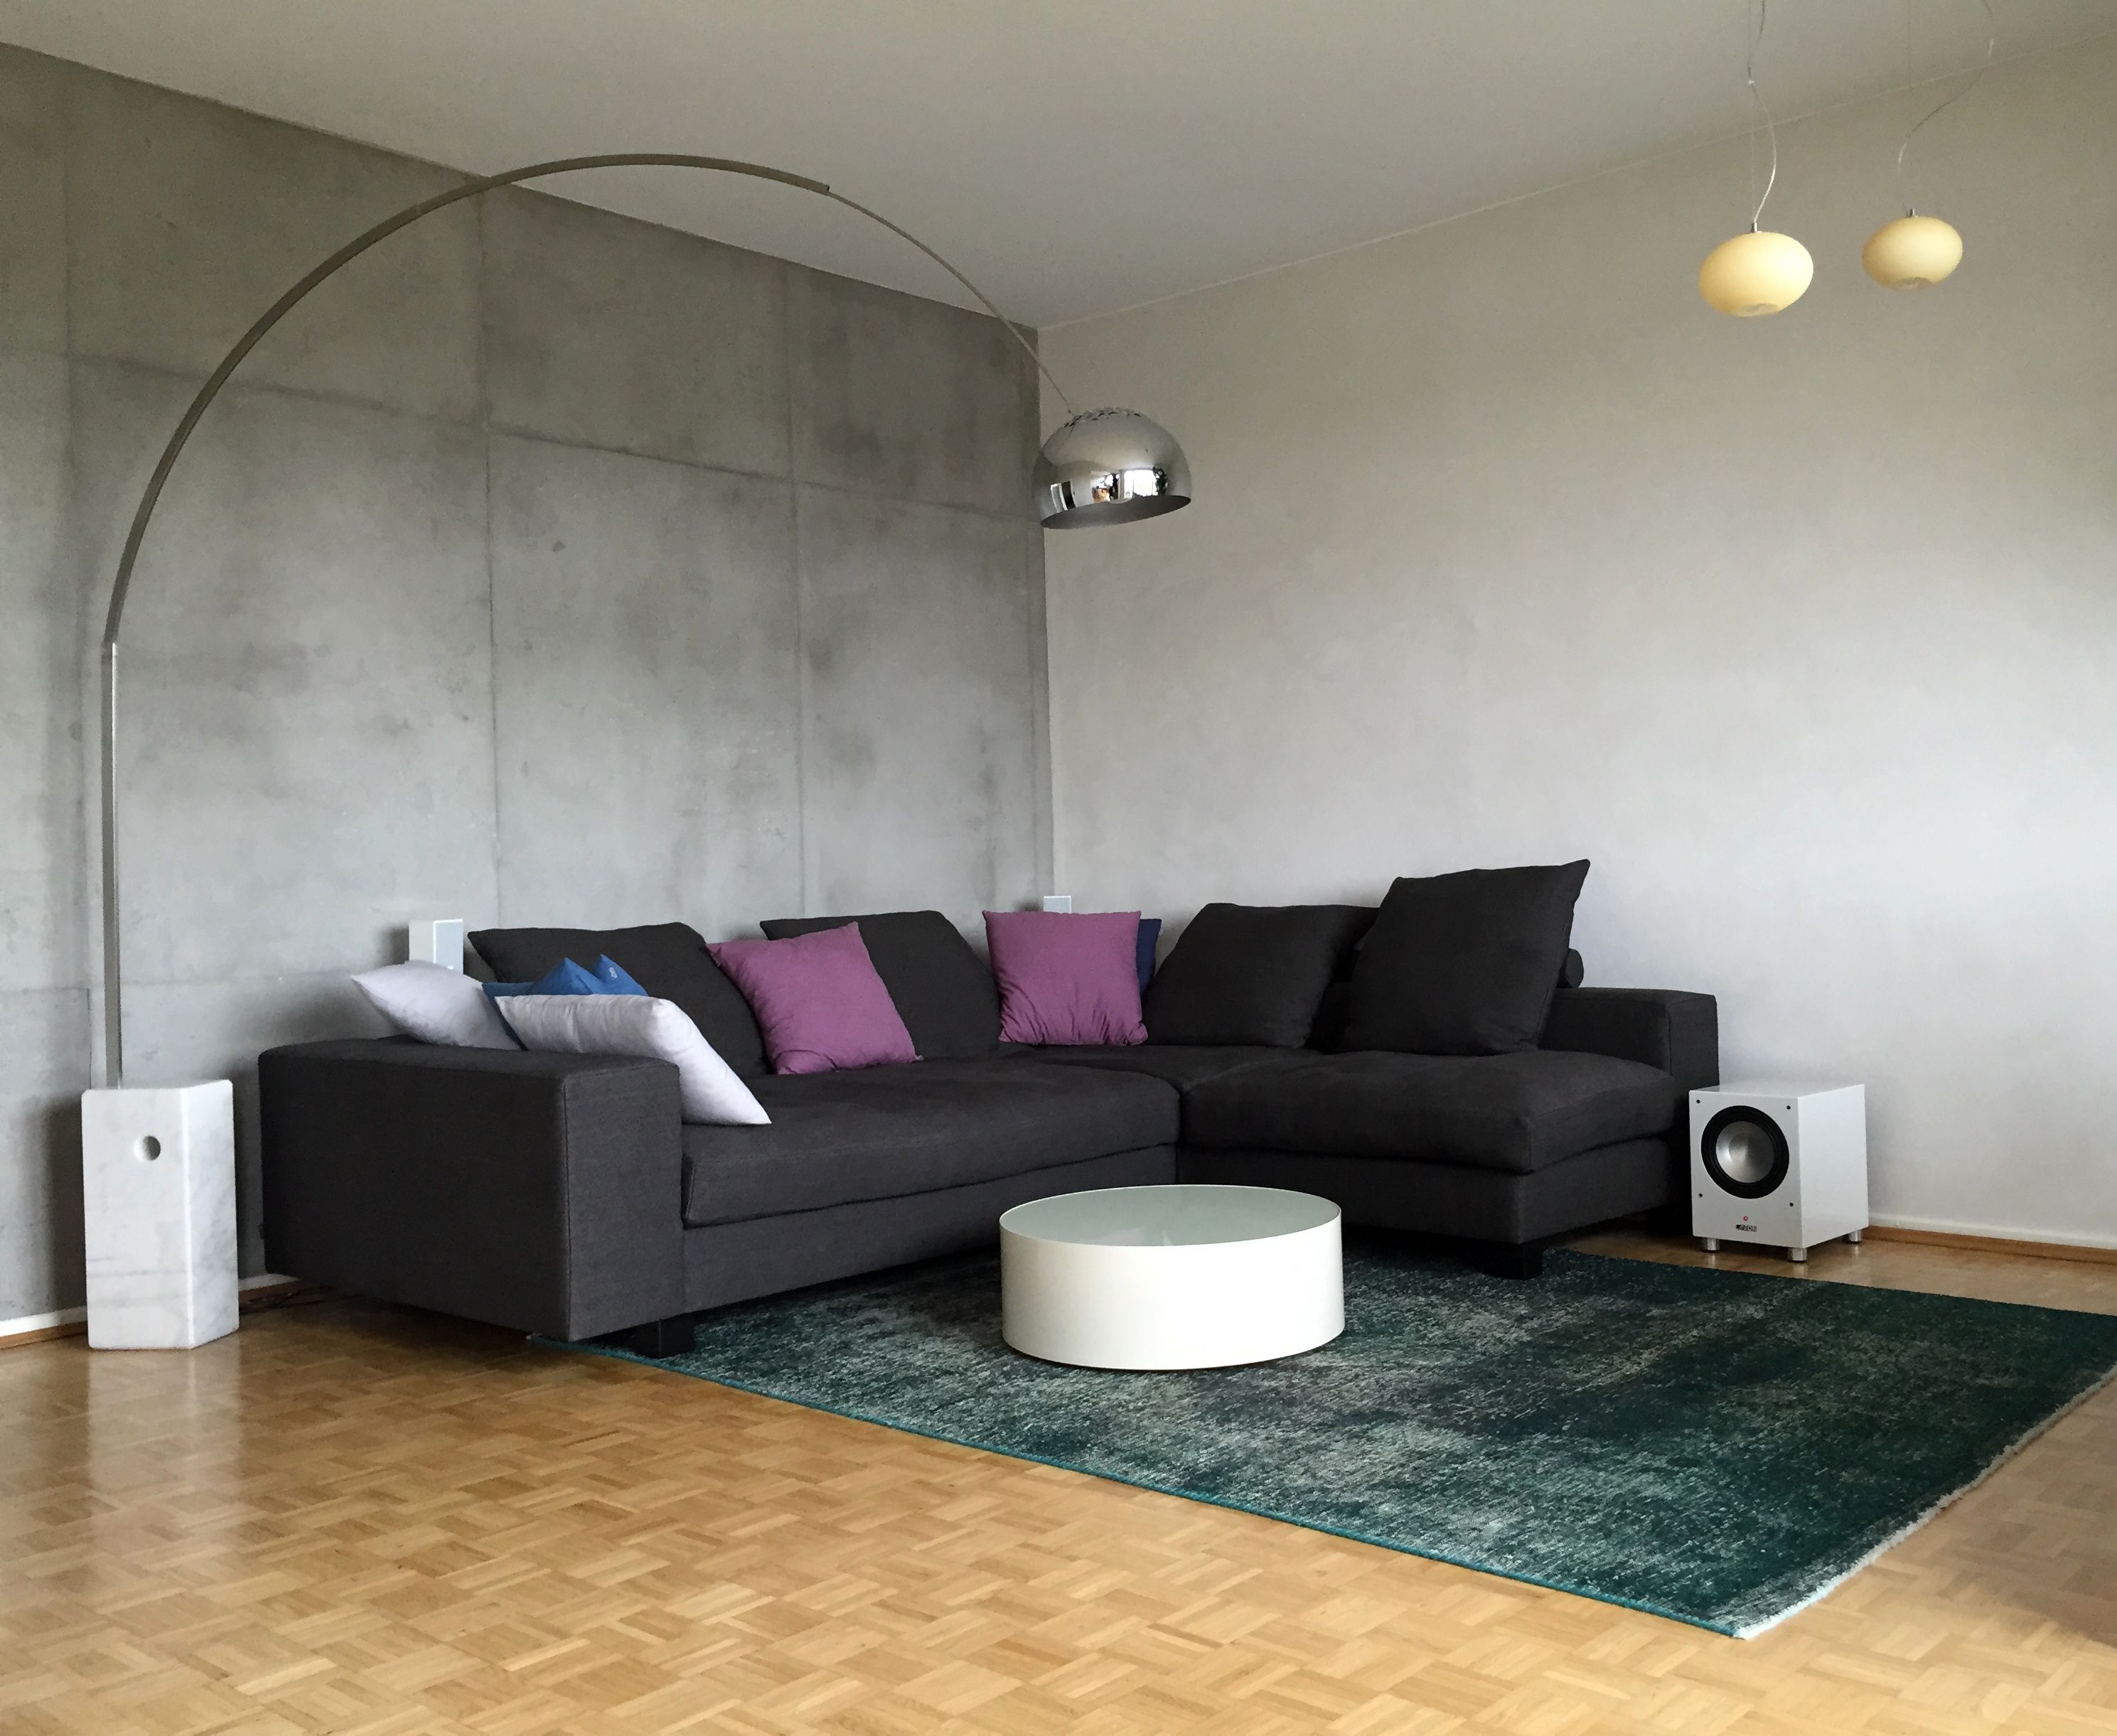 Wohnzimmer mit dunkelgrauem Sofa, bunten Kissen, weißem runden Couchtisch auf grünem Teppich, Betonwand-Optik und Bogenlampe.